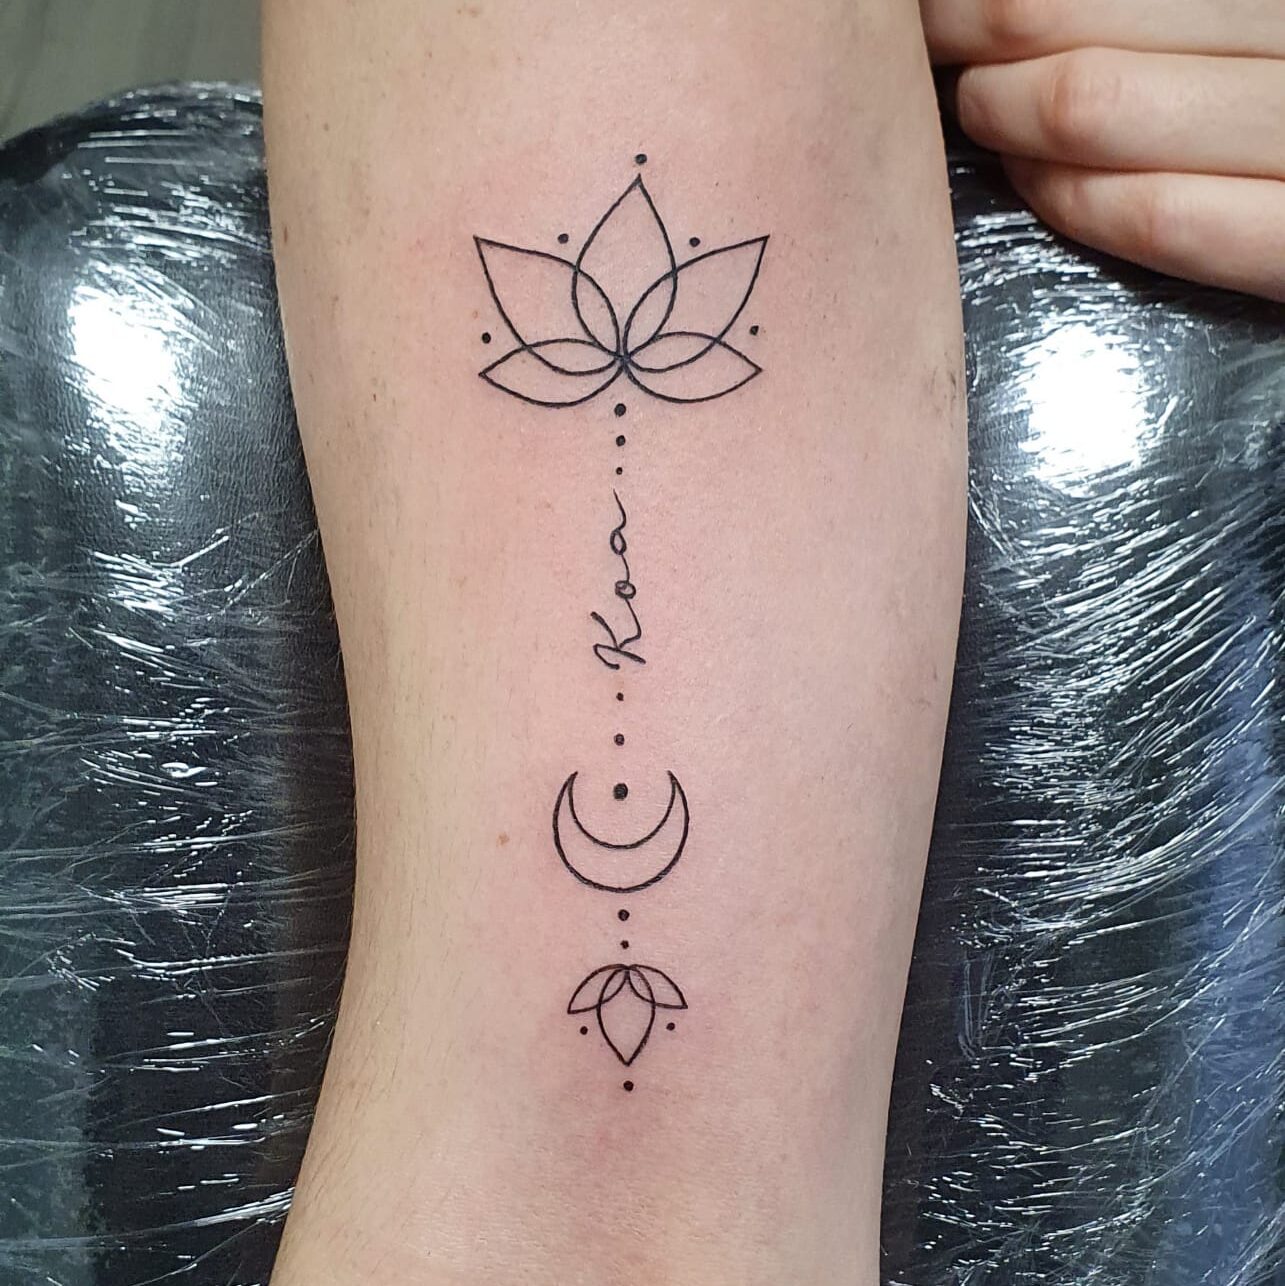 El simbolismo del tatuaje de flor de loto: Pureza y resiliencia en la piel